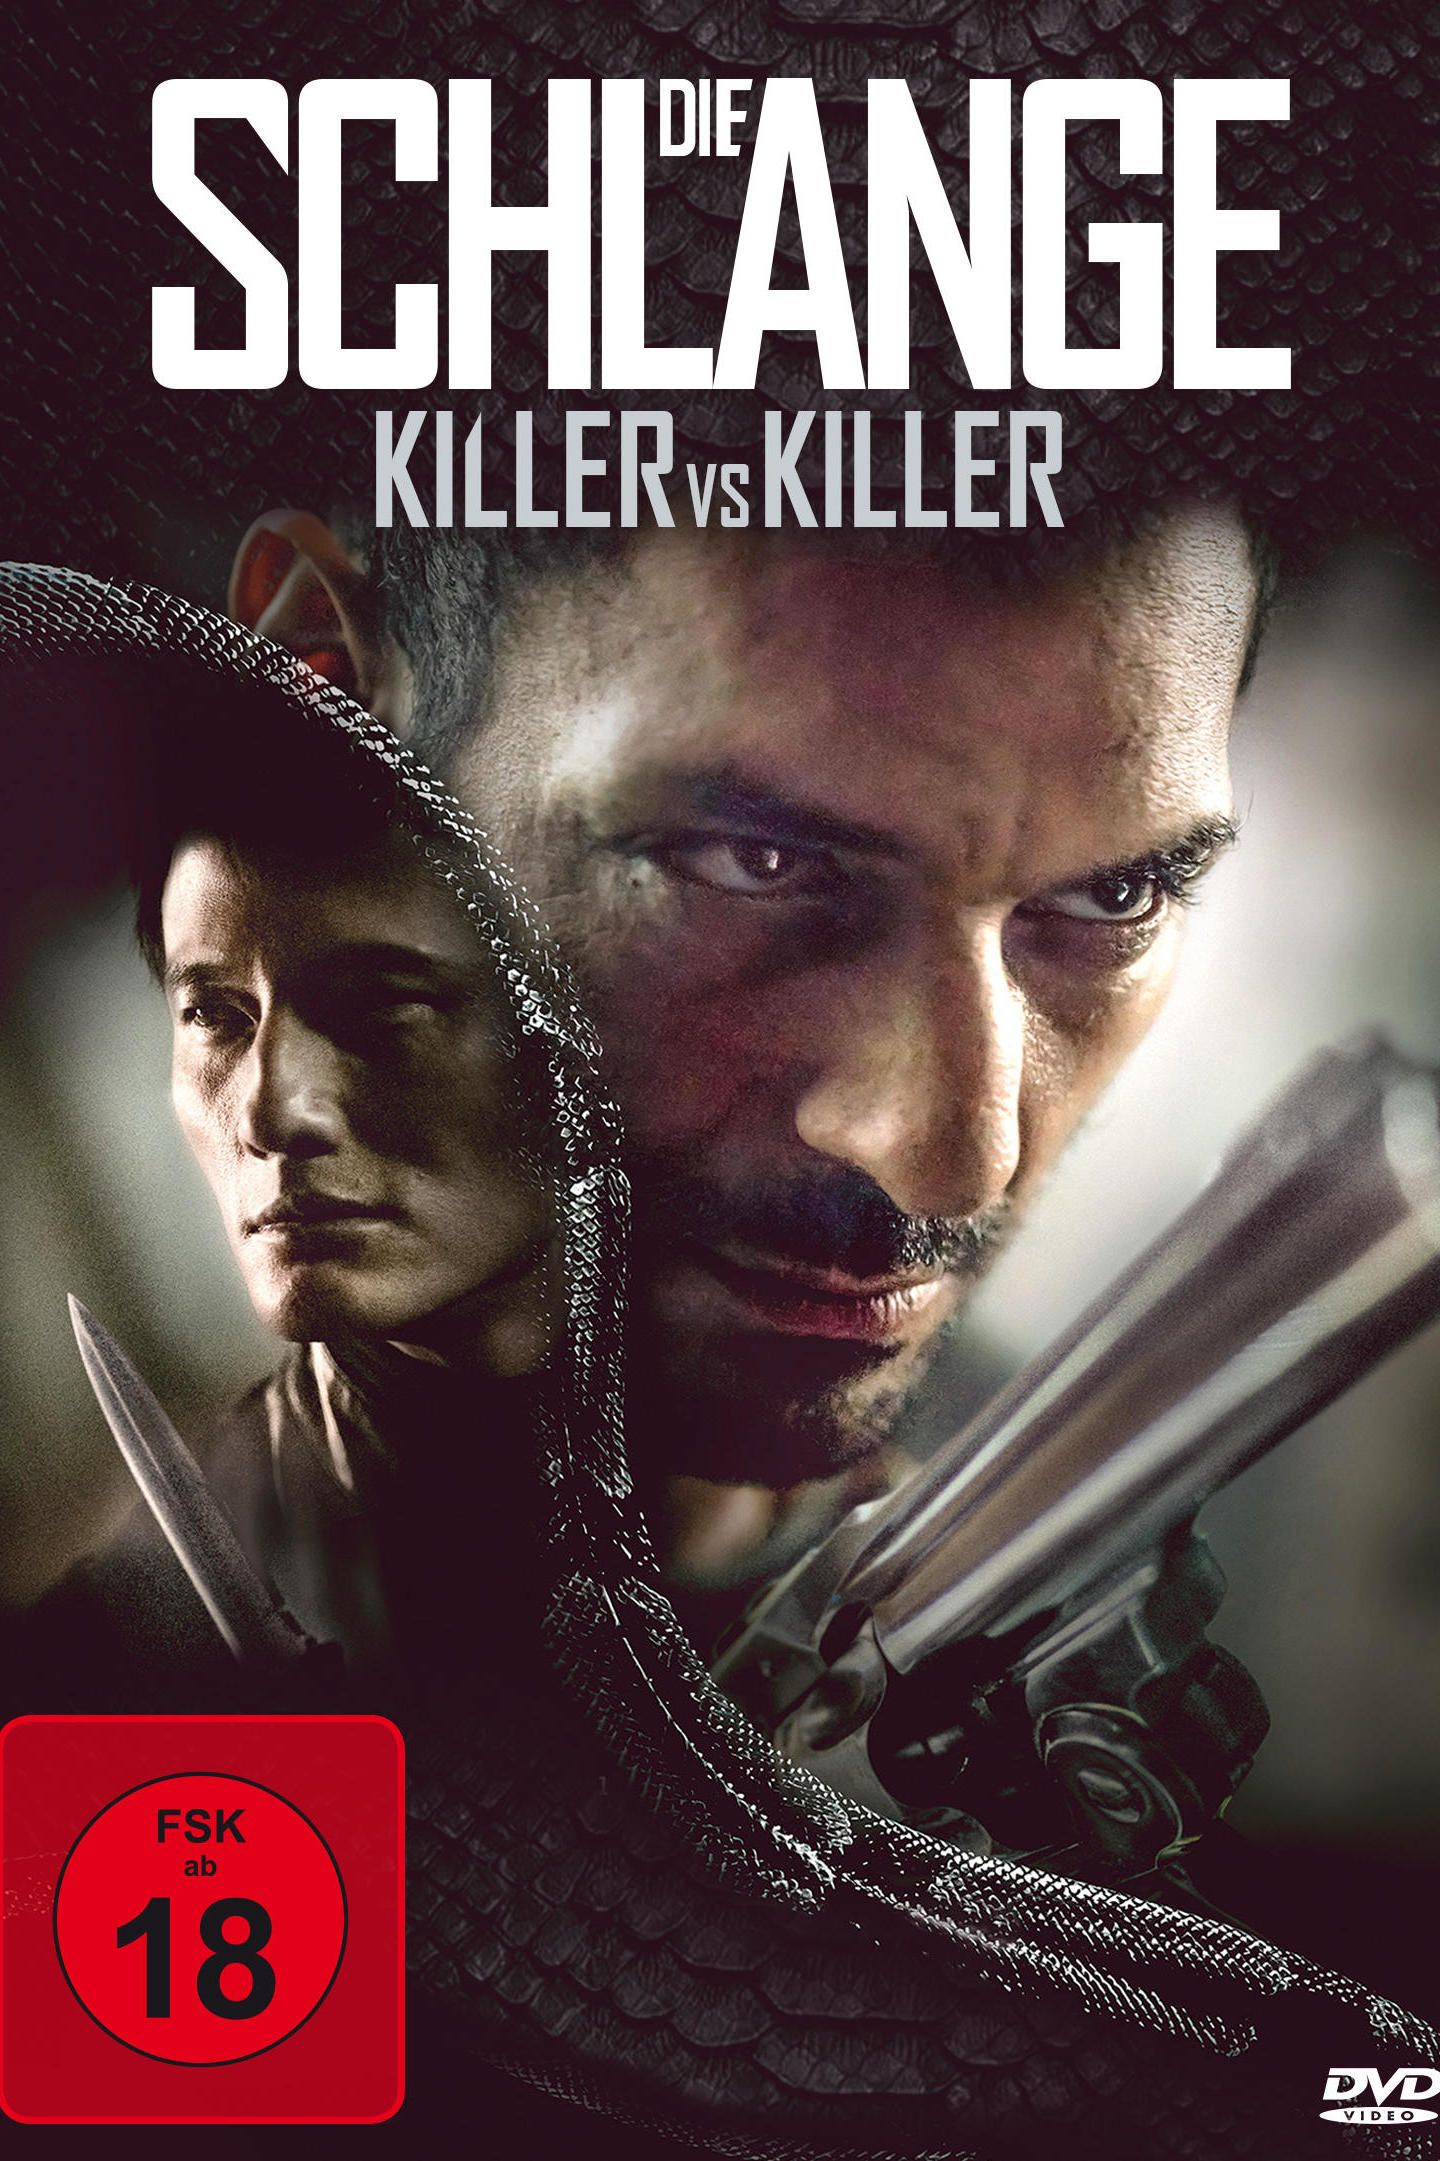 Killer vs killer